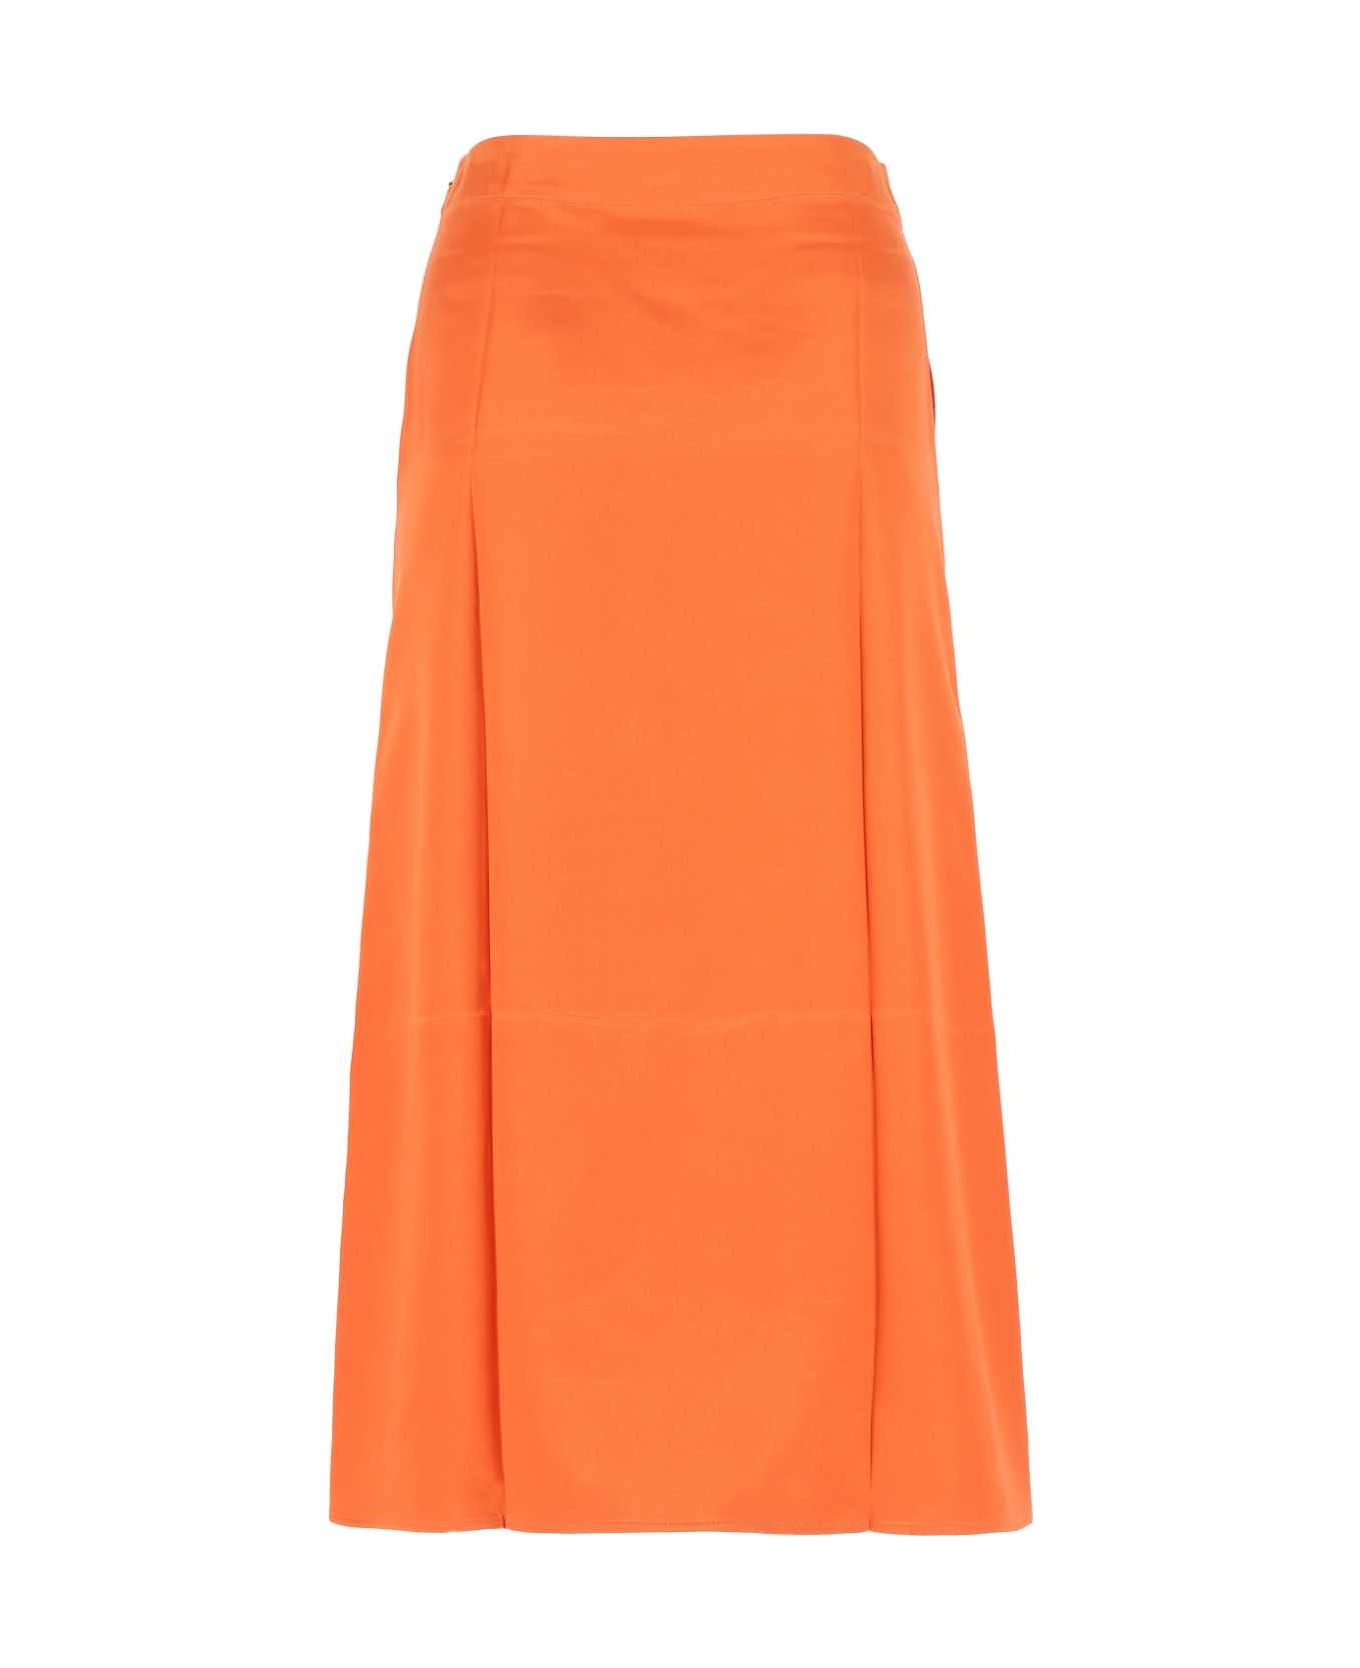 Loewe Orange Satin Skirt - BRIGHTORANGE スカート